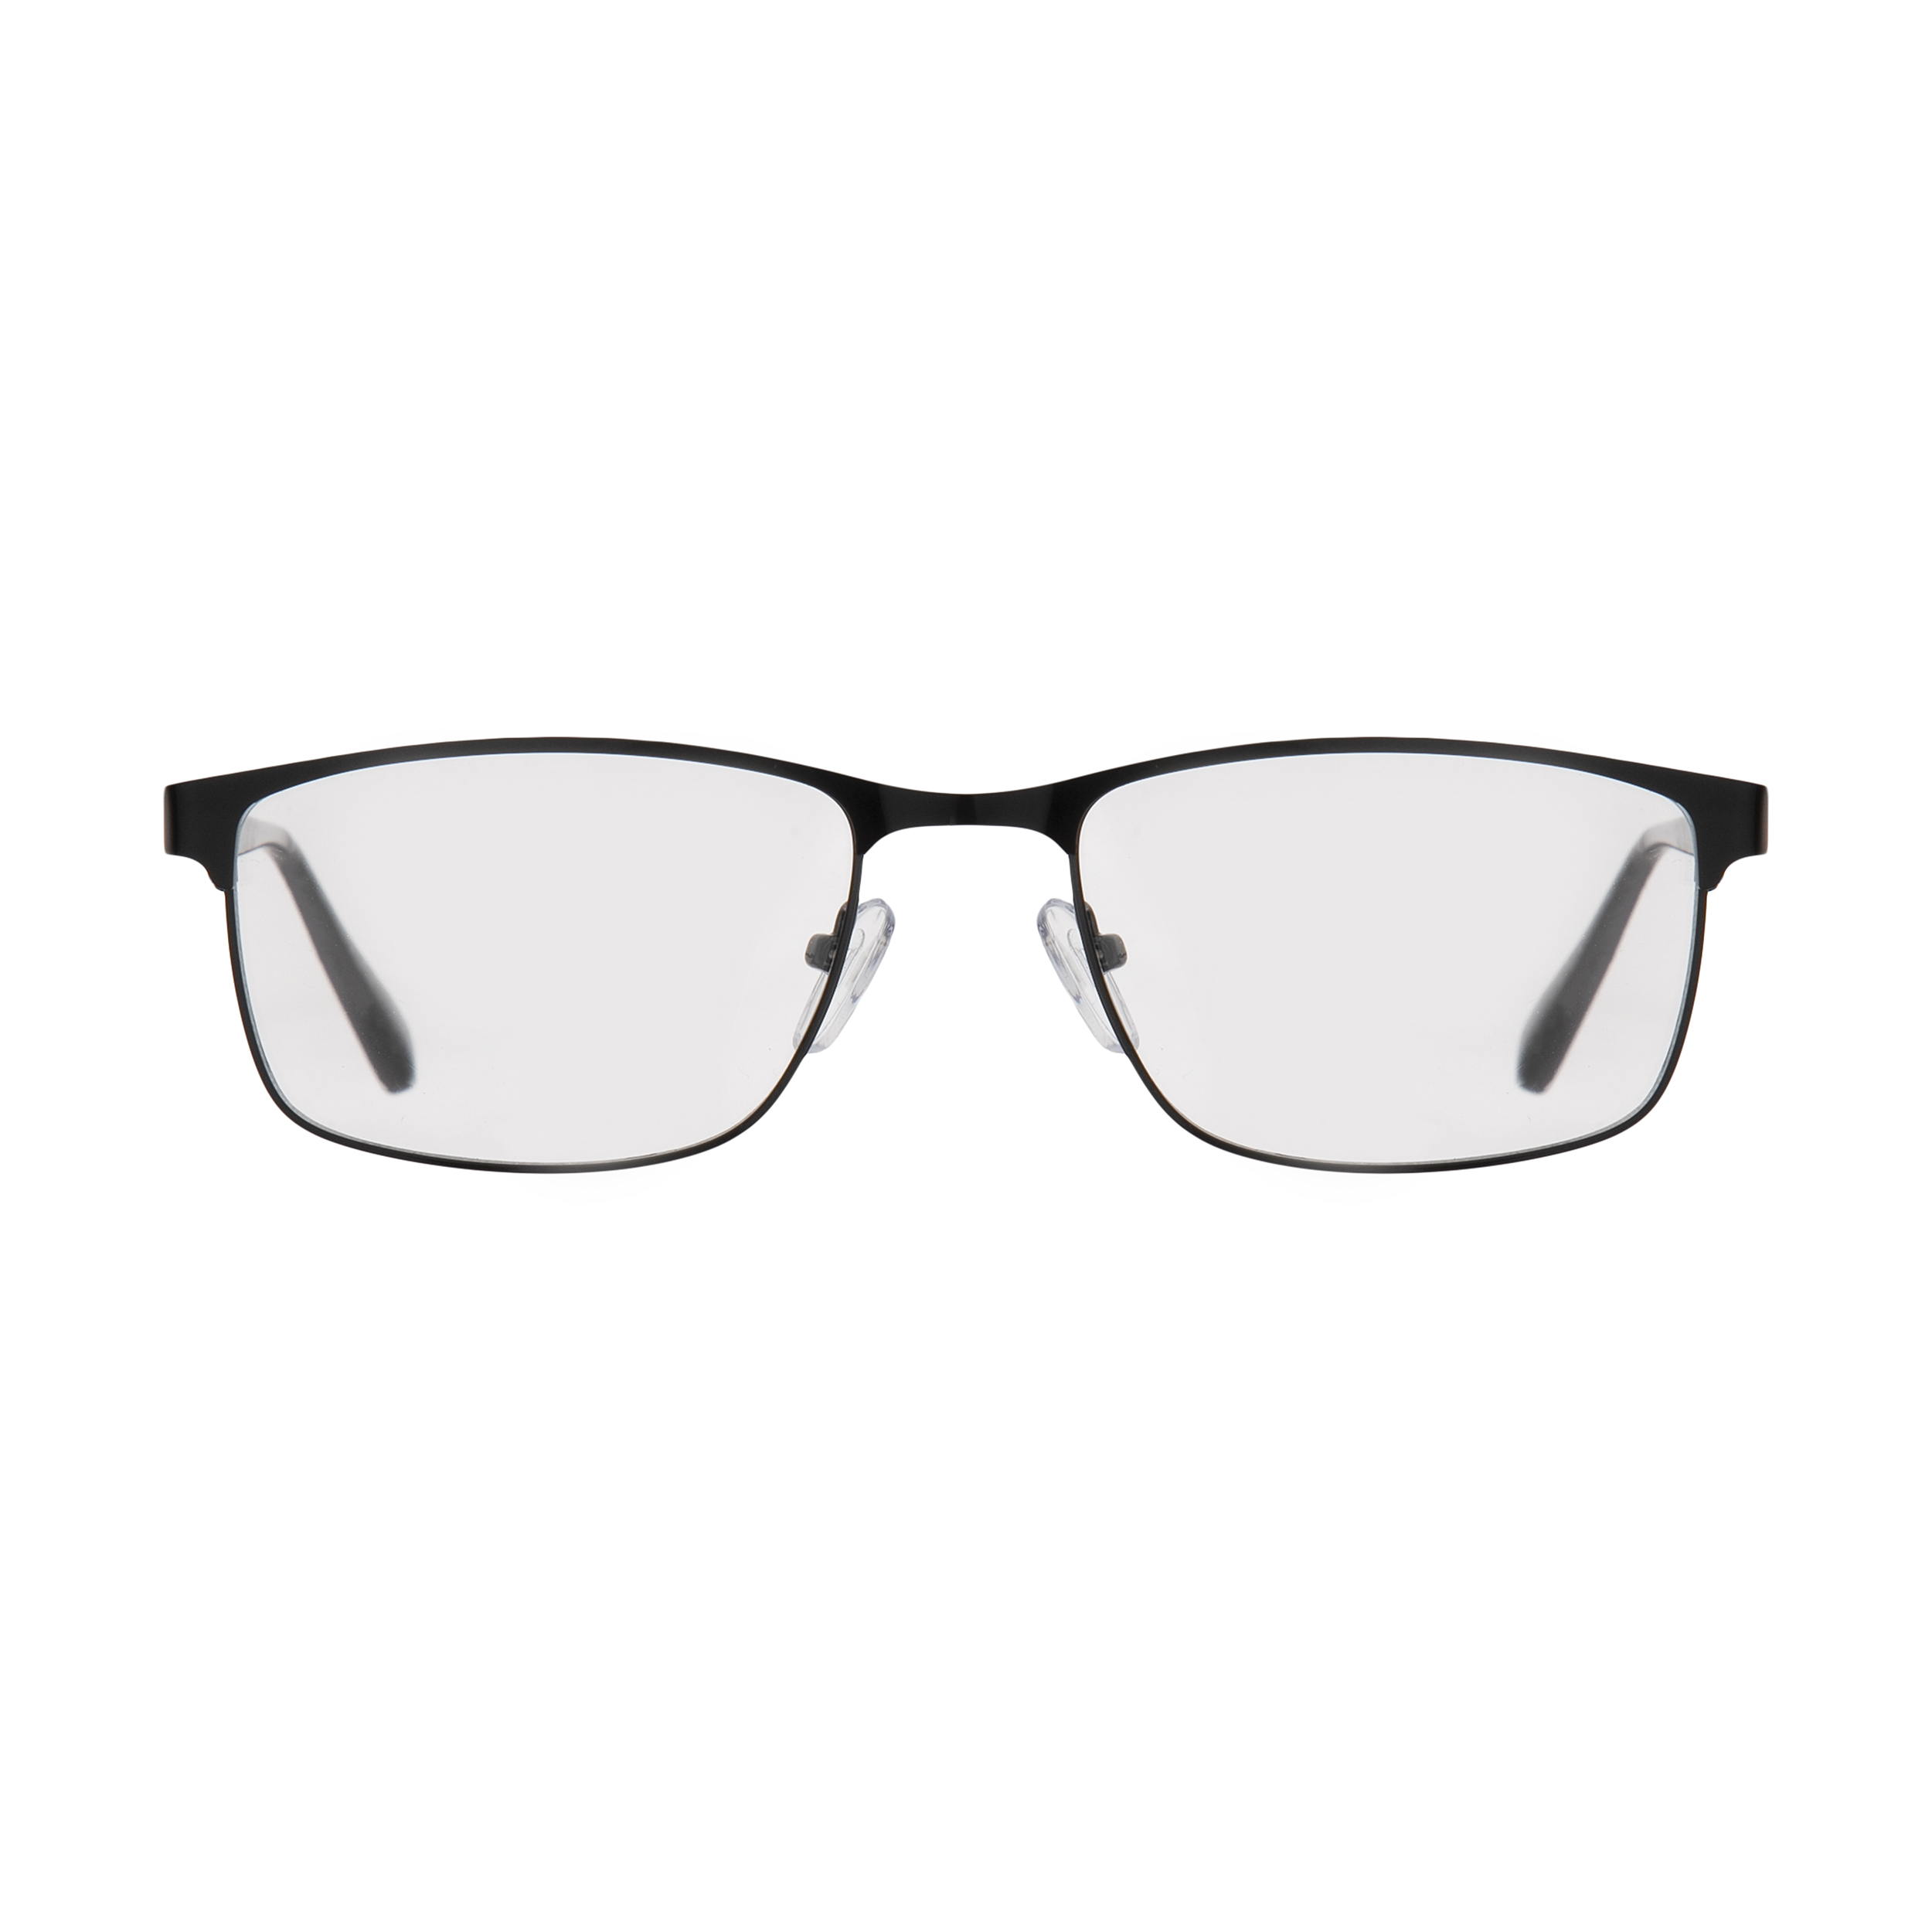 فریم عینک طبی امپریو آرمانی مدل 8986 -  - 1